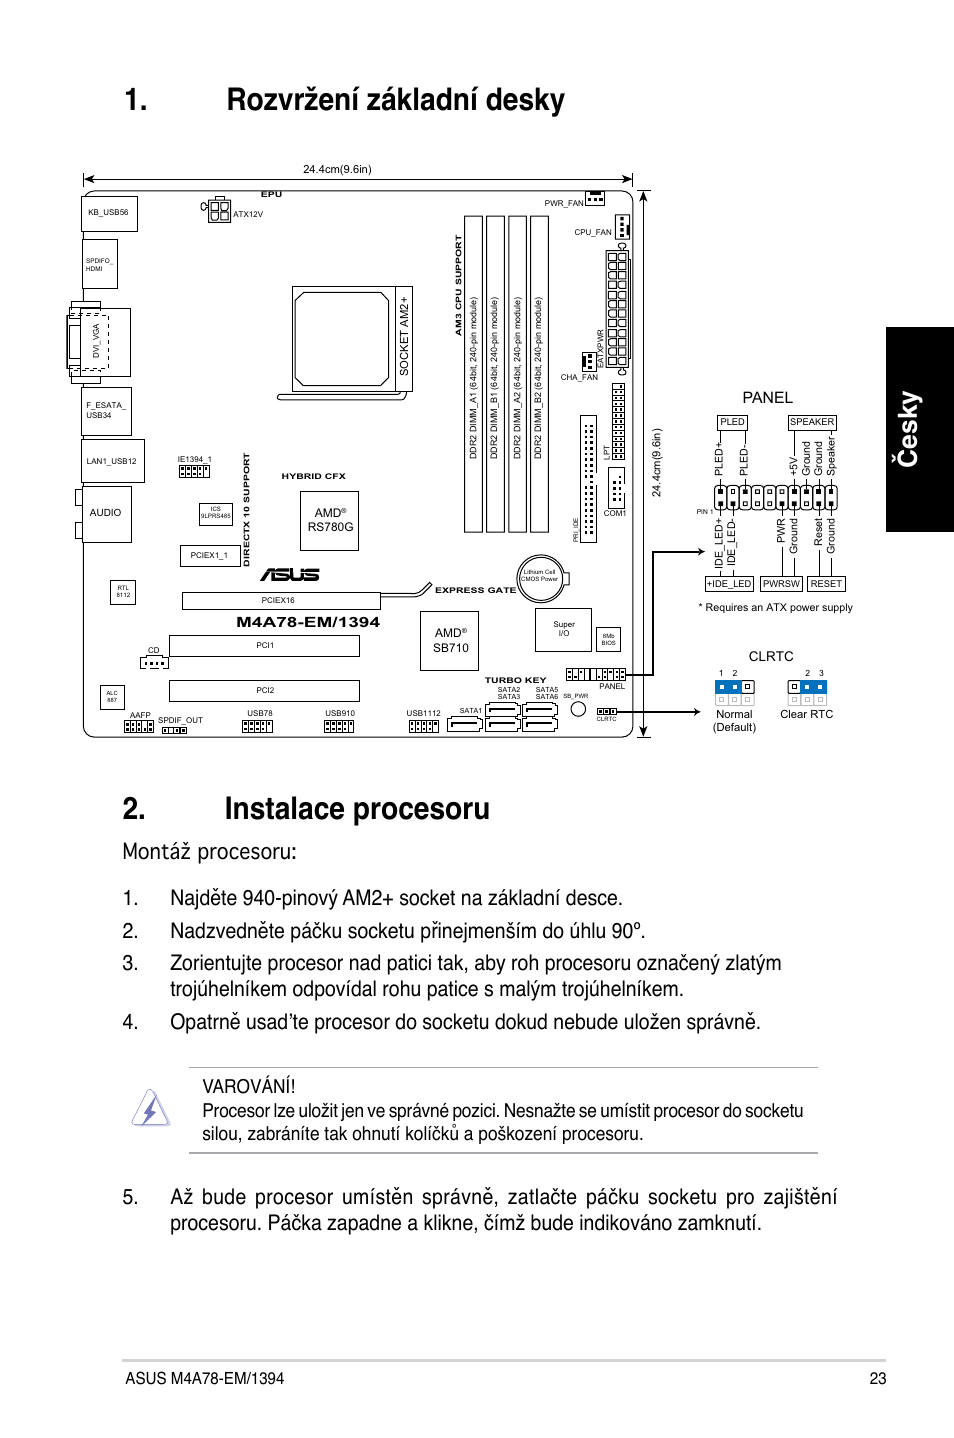 Instalace procesoru, Rozvržení základní desky, Česky | Asus M4A78-EM/1394  User Manual | Page 23 / 38 | Original mode